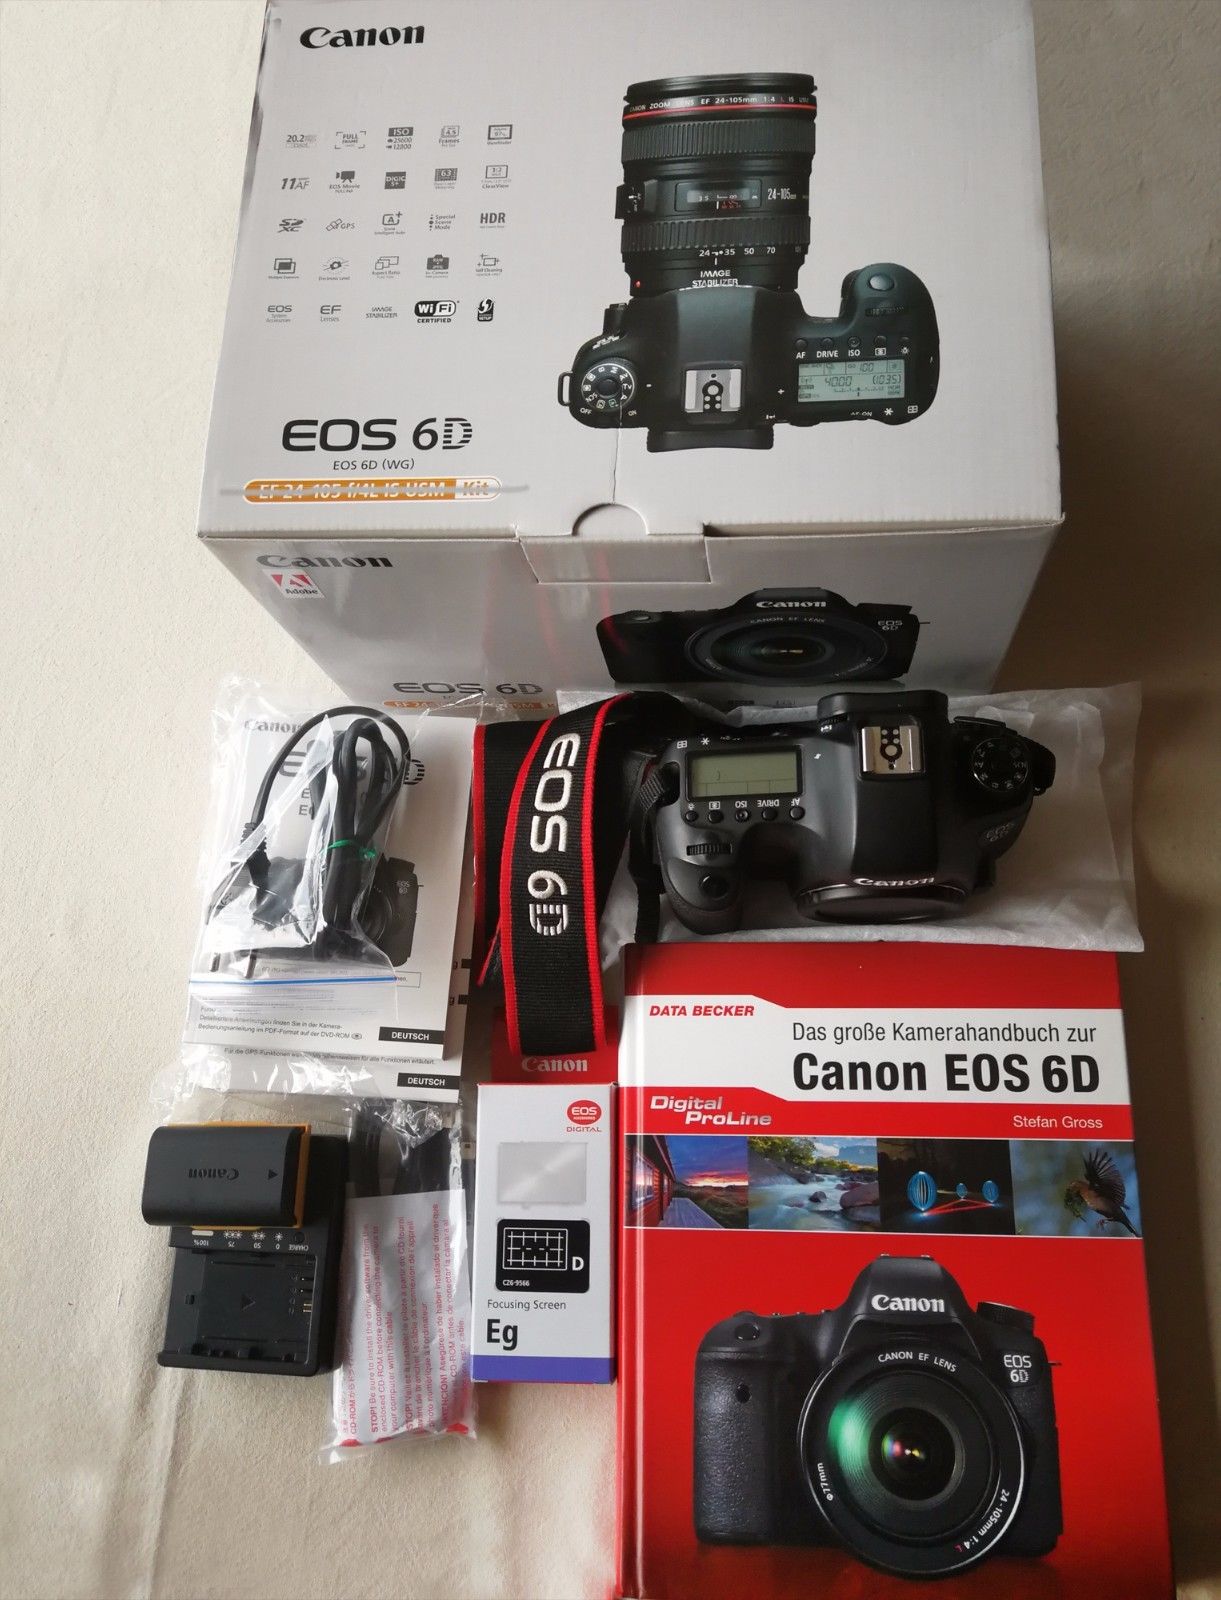 Canon EOS 6D 20.2MP Digitalkamera OVP - schwarz  - 14707 Auslösungen 